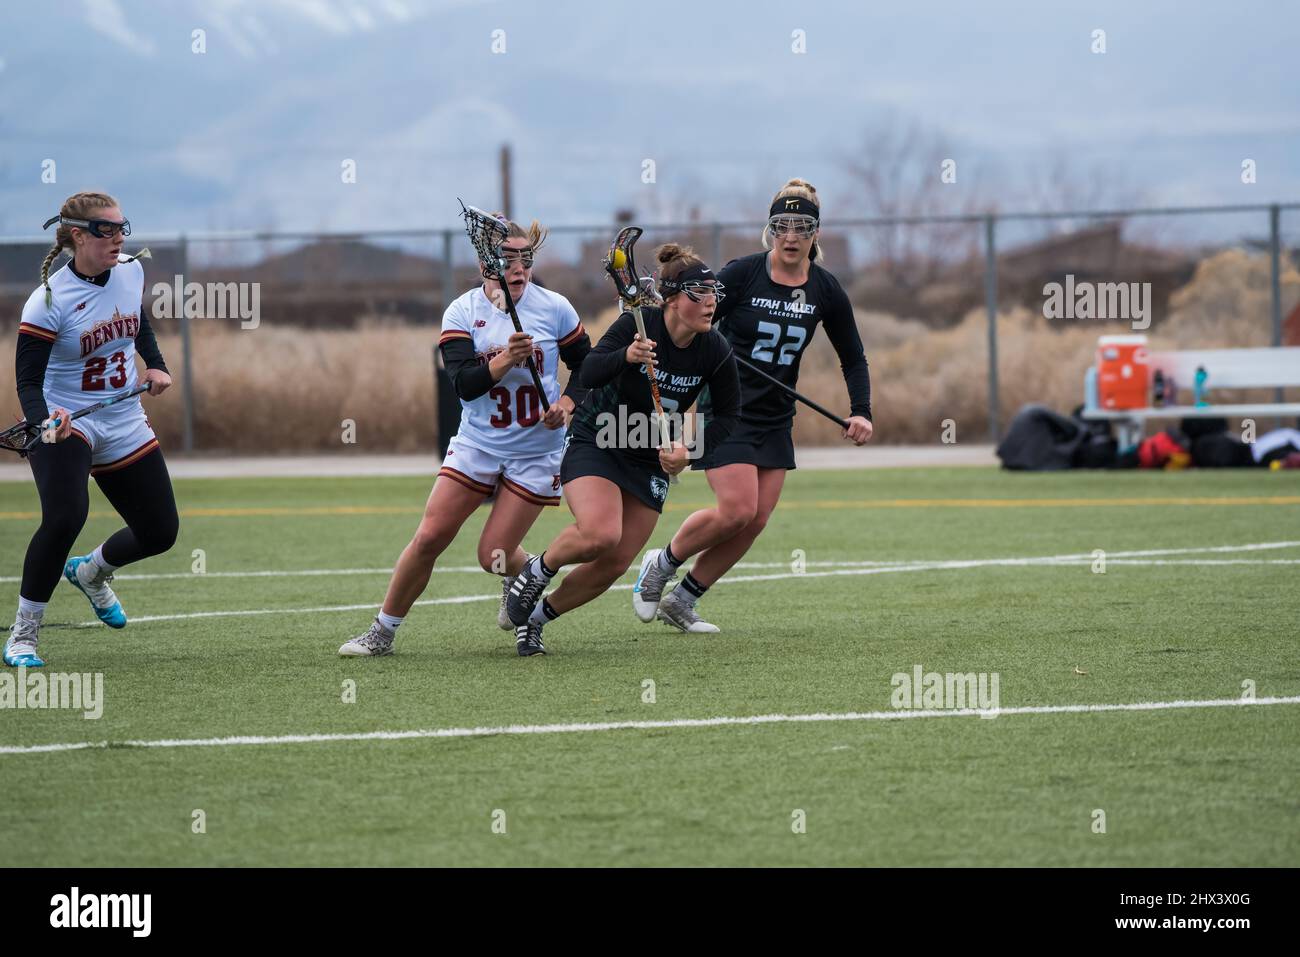 Vineyard, Utah, USA - 5. März 2022. Die Intensität und Athletik von Women's Lacrosse. Schnelligkeit, Koordination und Zähigkeit sind in diesem Sport gefragt. Stockfoto